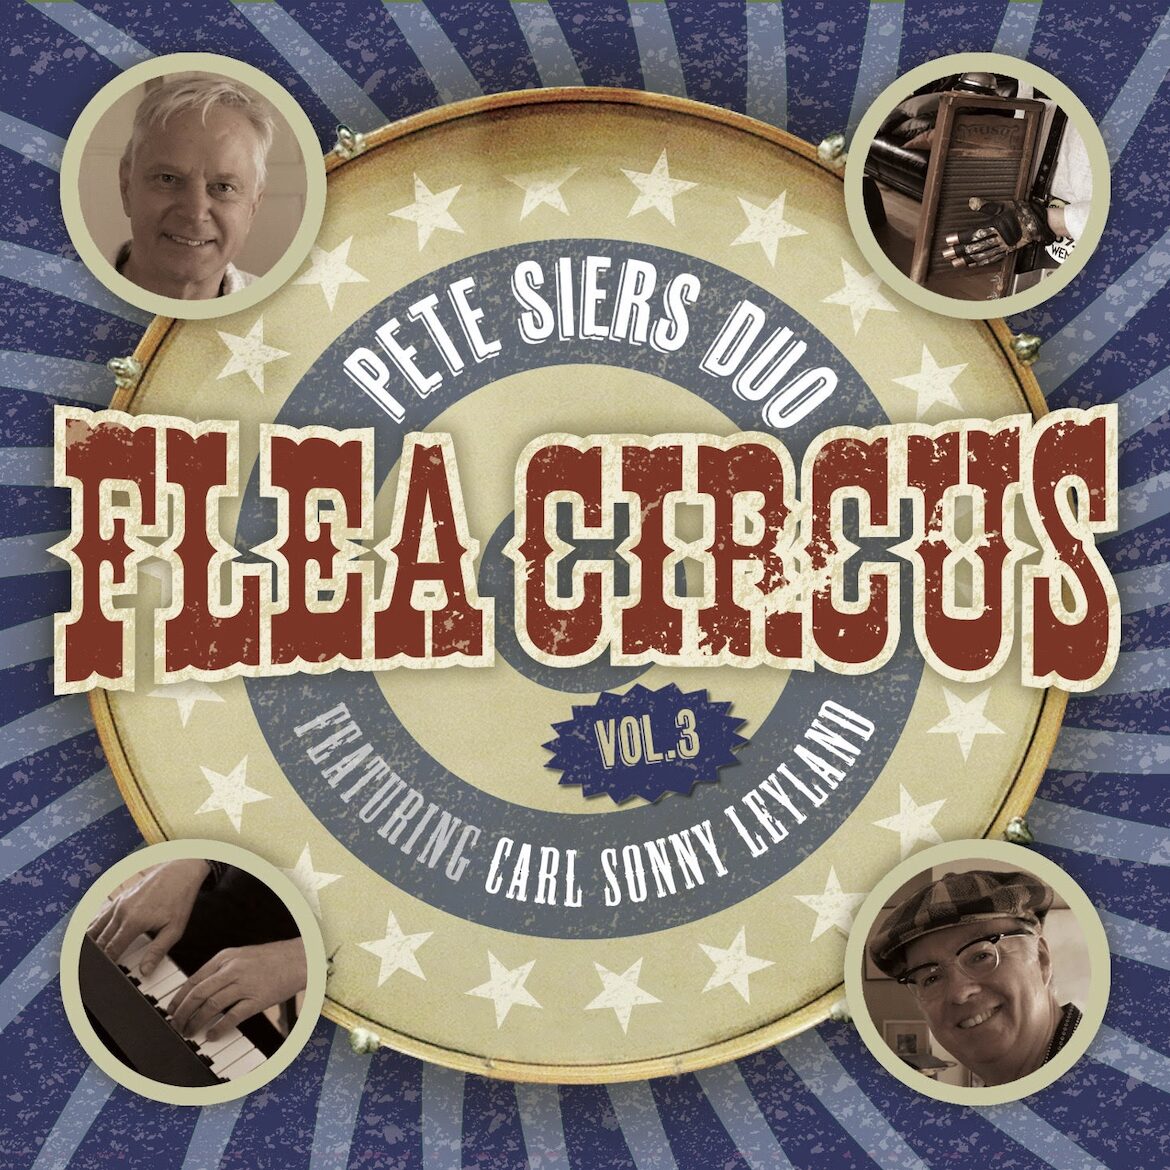 Flea-Circus-3